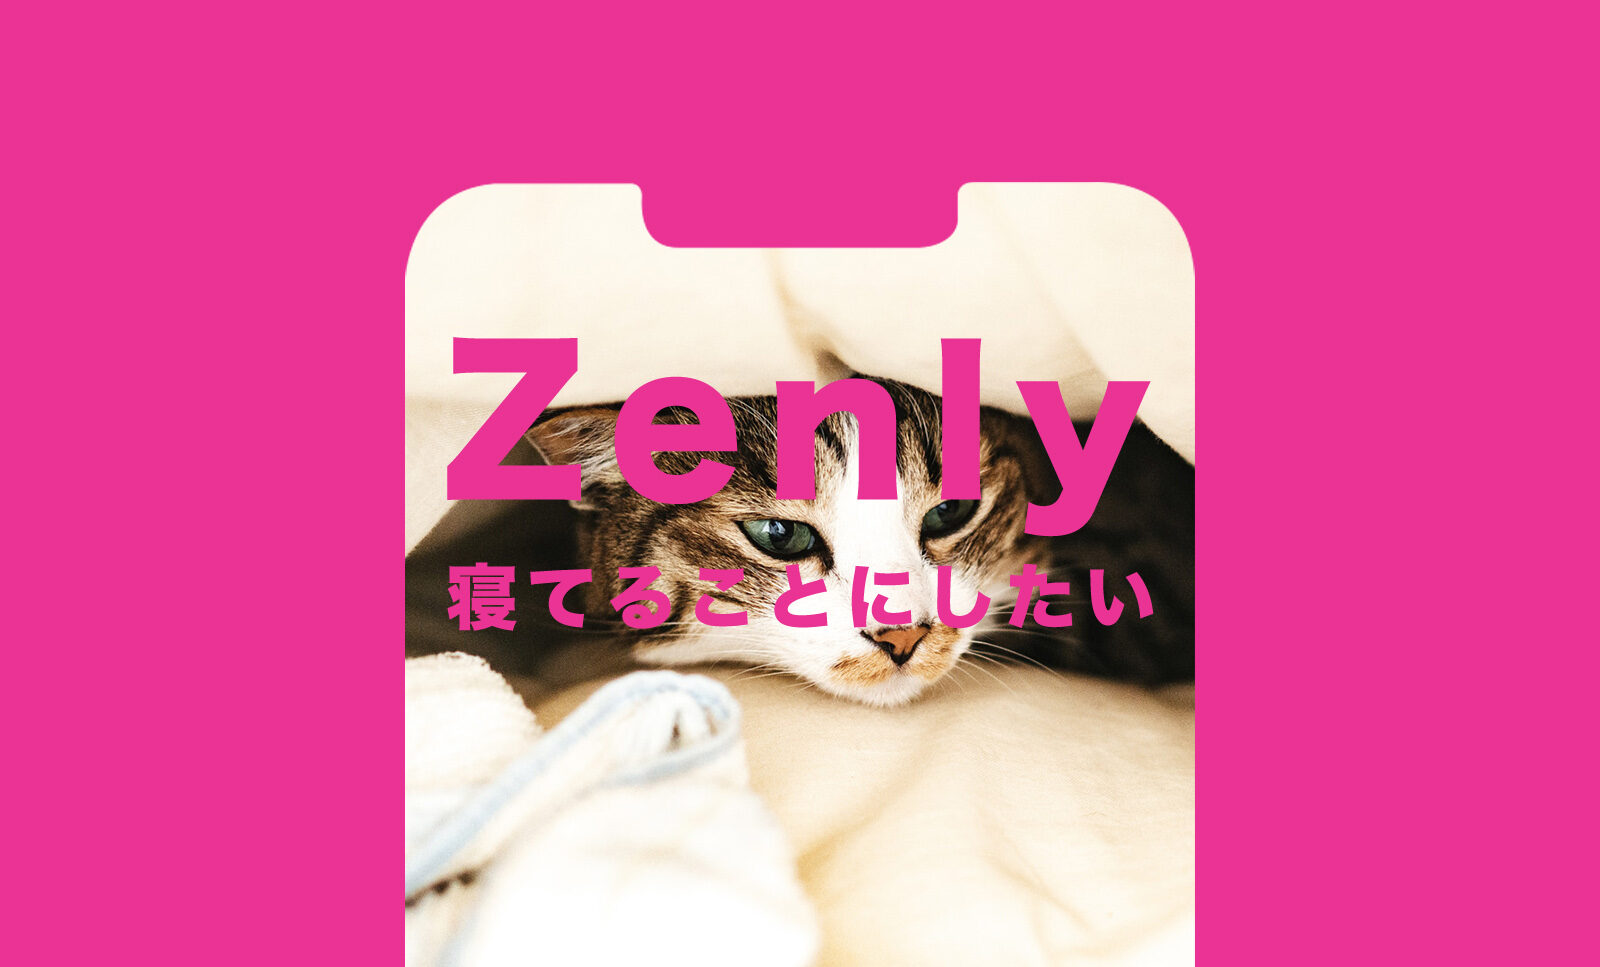 ゼンリー(Zenly)でずっと就寝中(睡眠中)にする方法&寝てることにしたい場合はどうすれば？のサムネイル画像